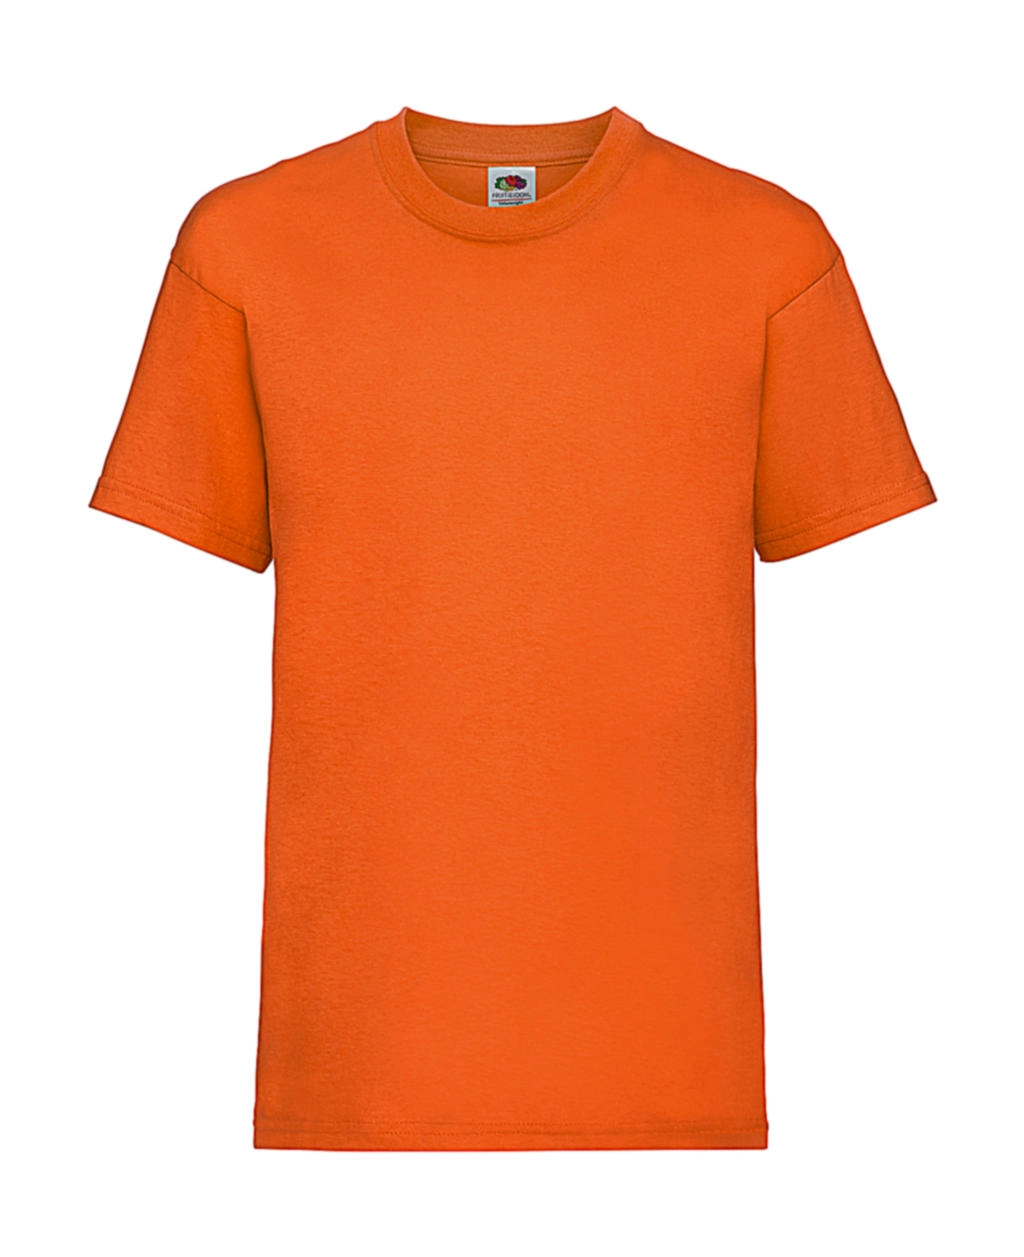 Kids Valueweight T zum Besticken und Bedrucken in der Farbe Orange mit Ihren Logo, Schriftzug oder Motiv.